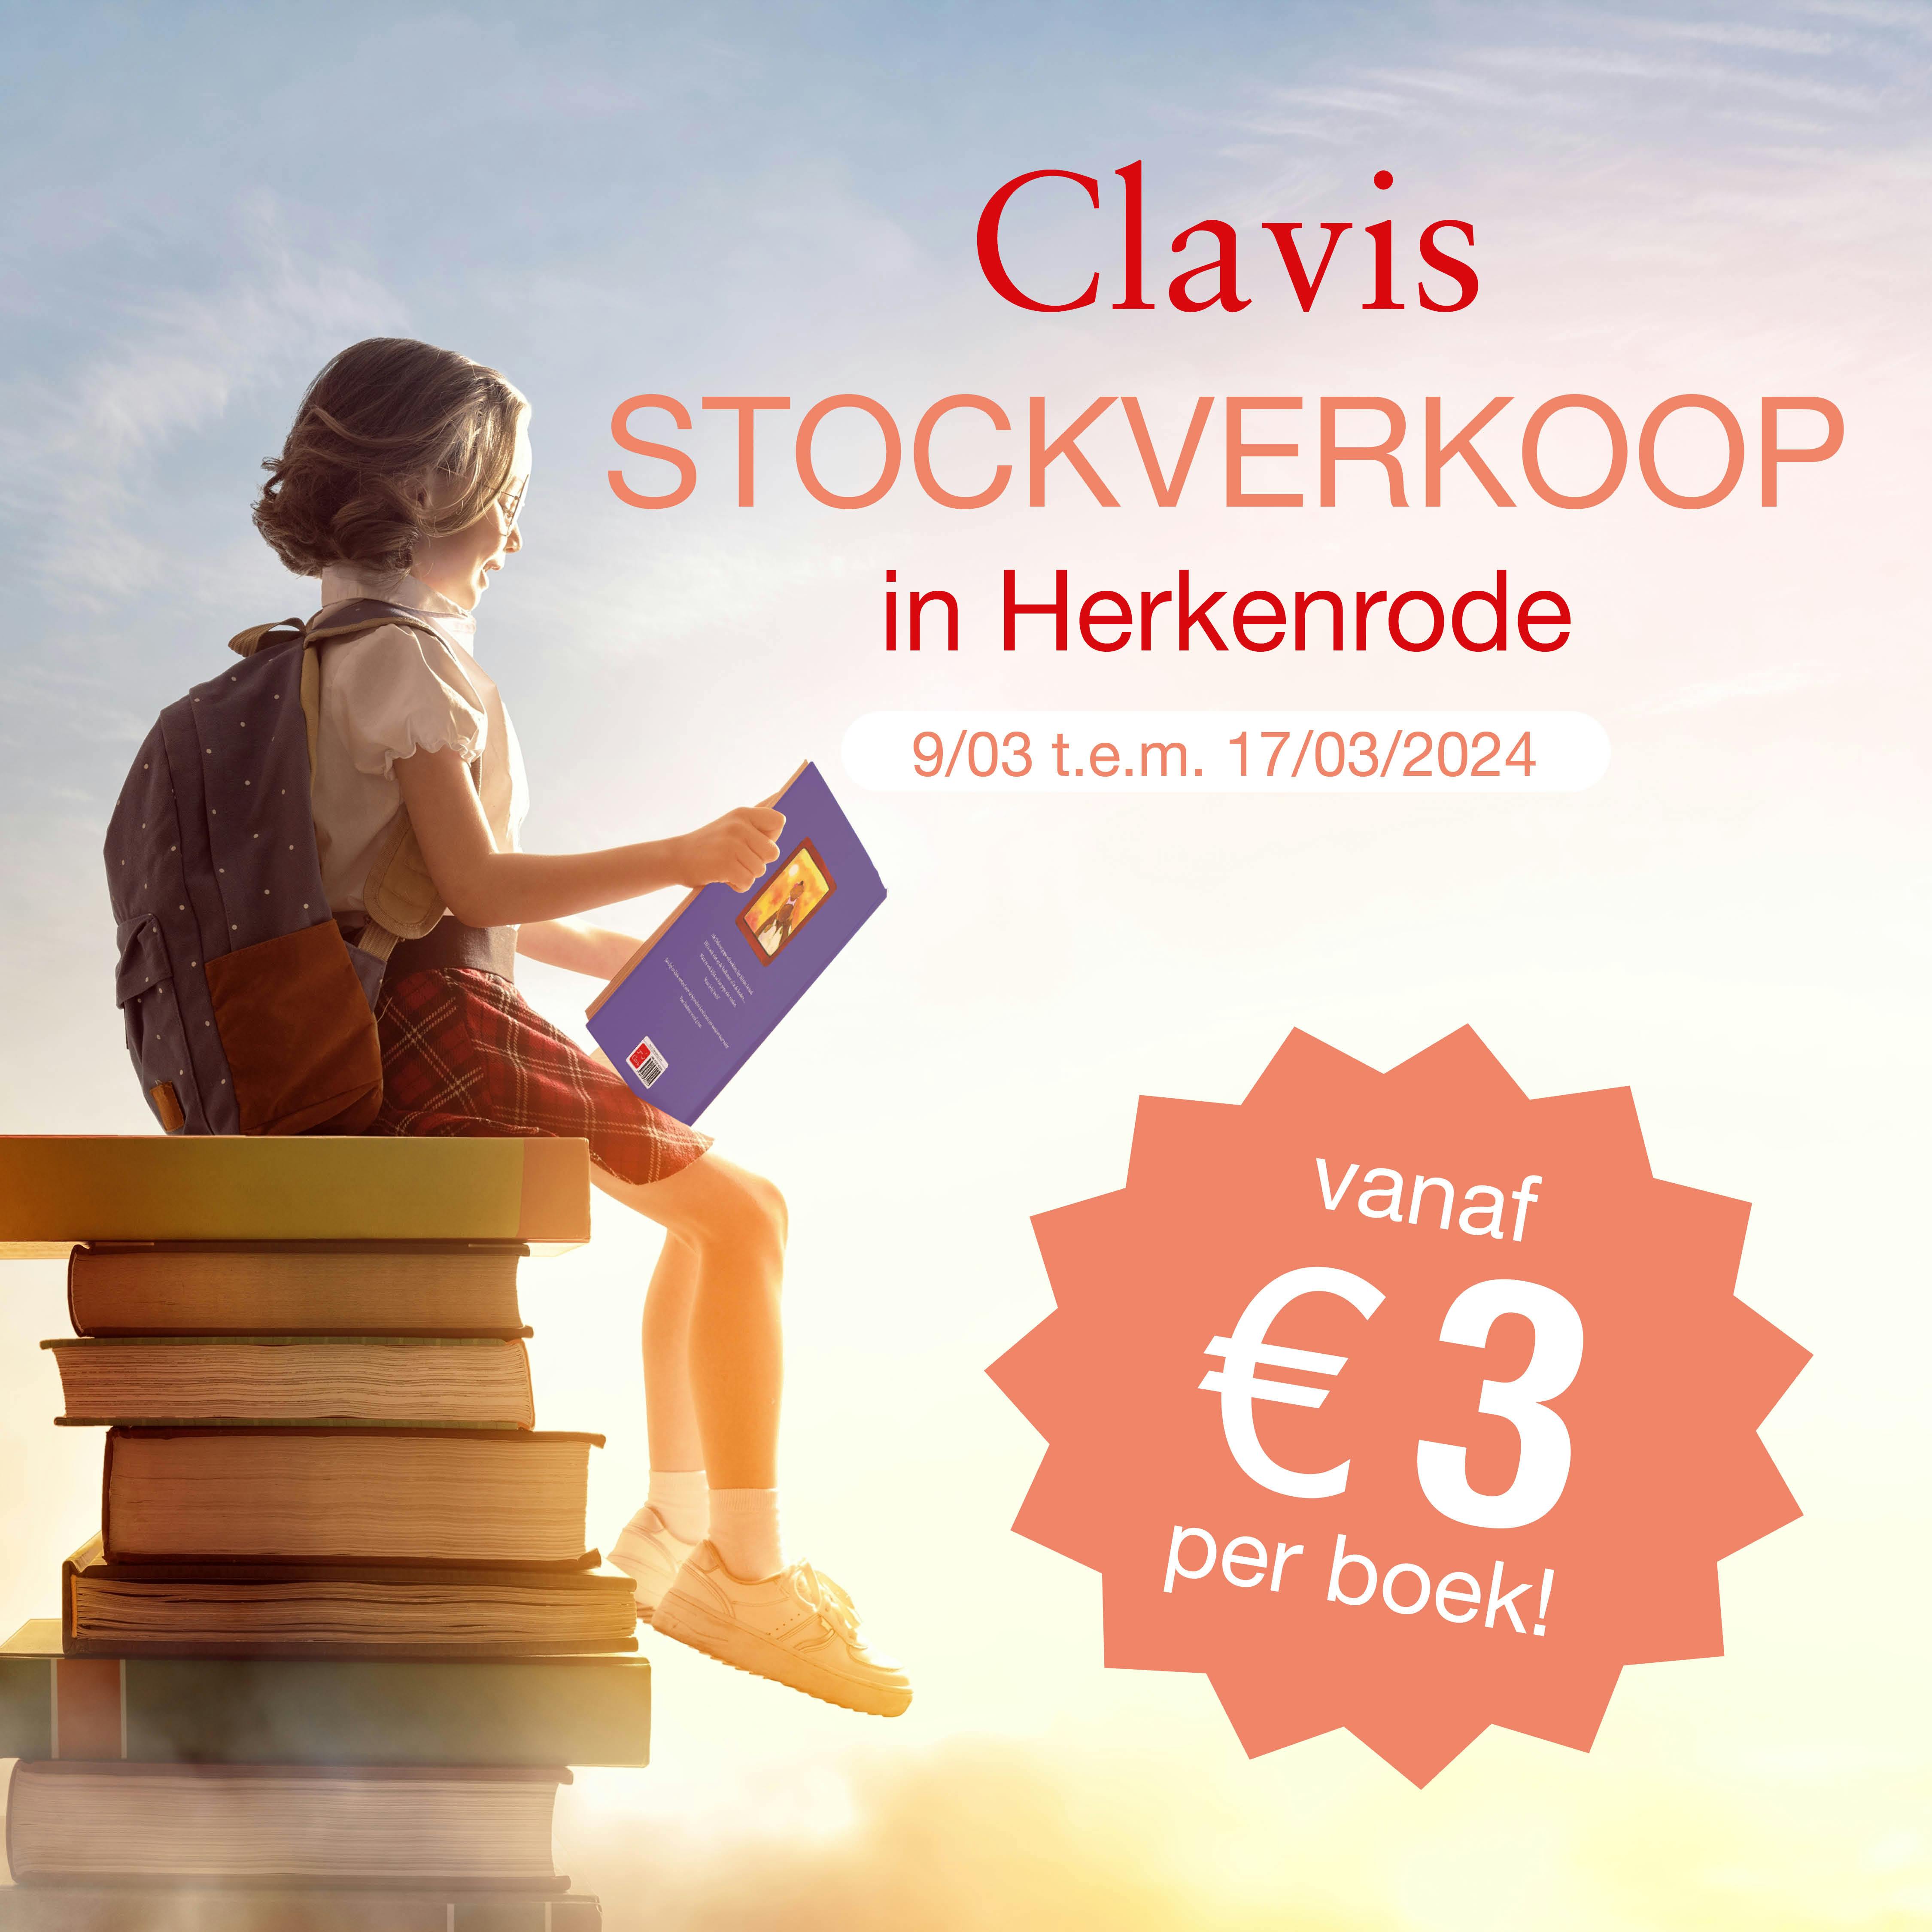 Afbeelding om de stockverkoop van Clavis Uitgeverij aan te kondigen in Herkenrode